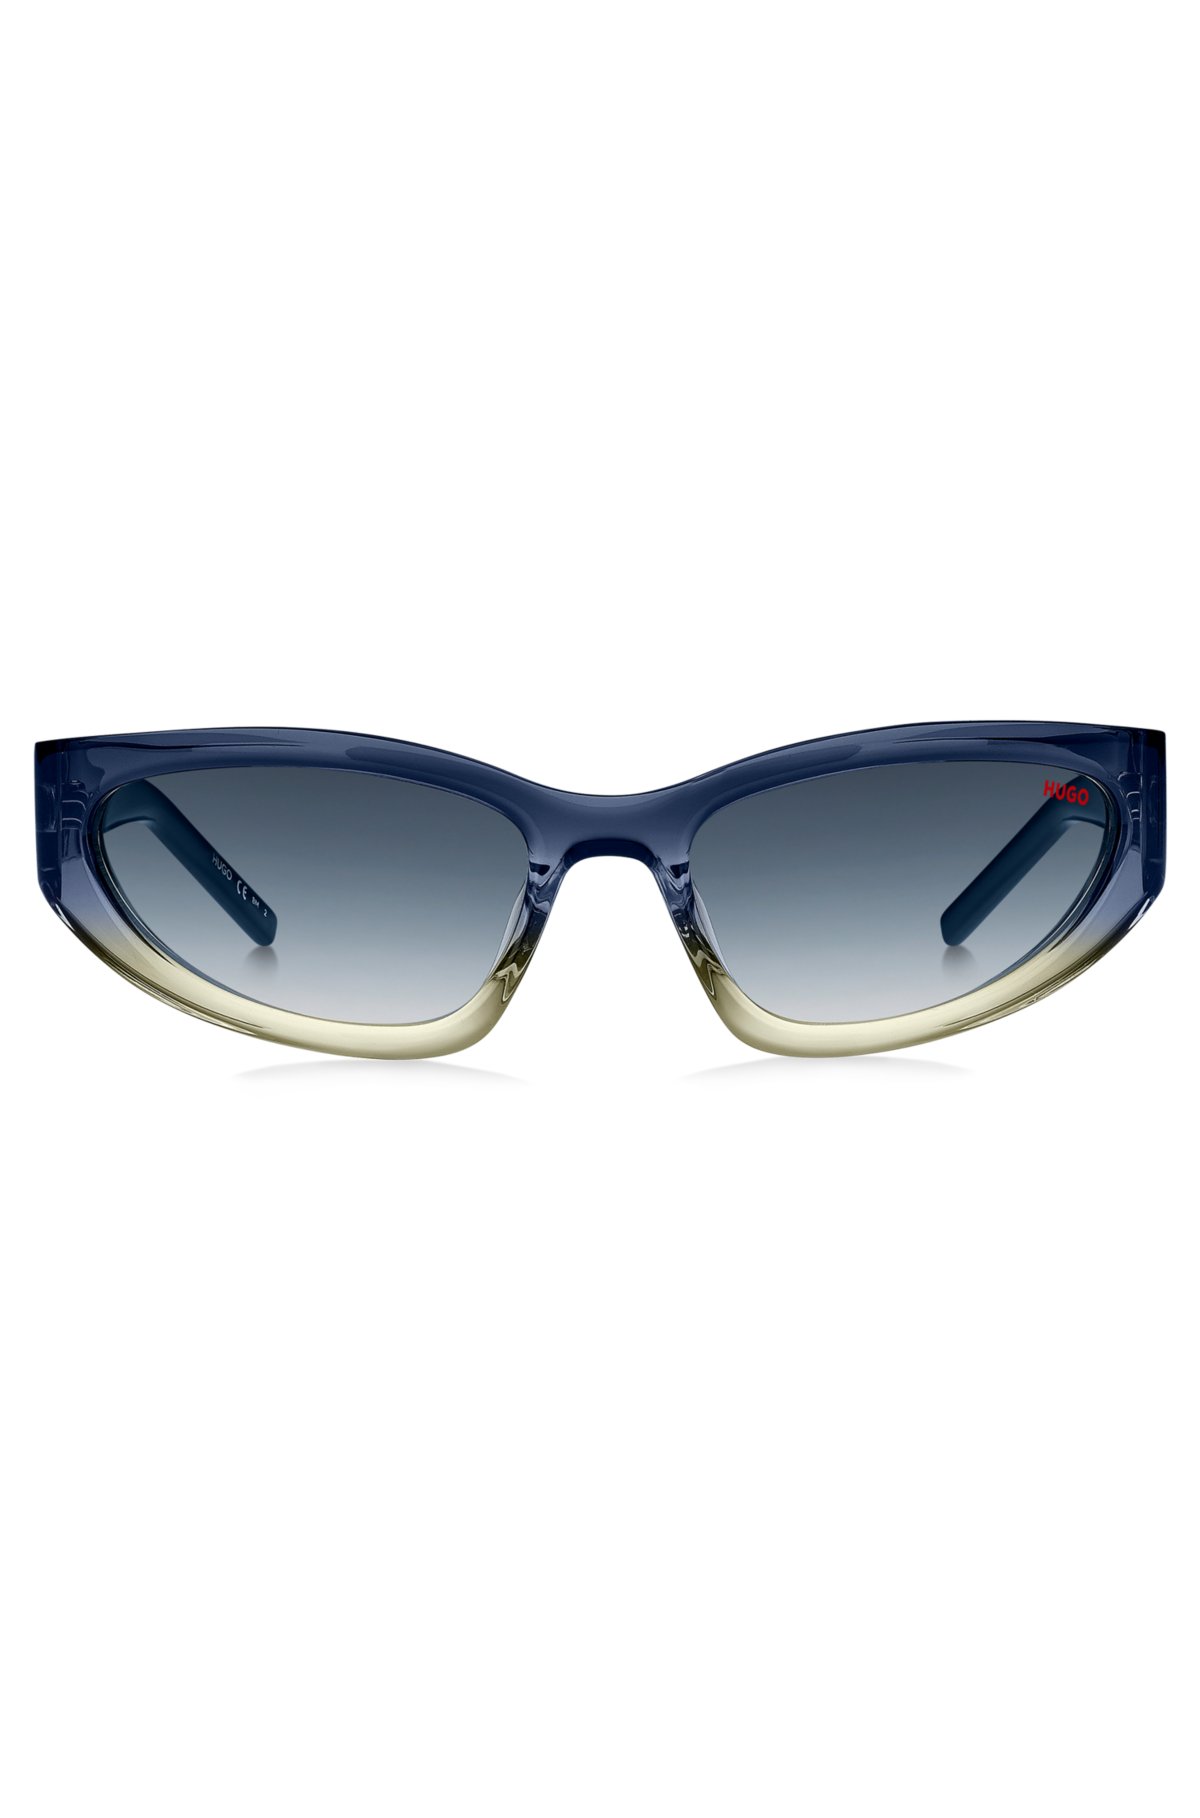 HUGO - Tofarvede solbriller i blåt og